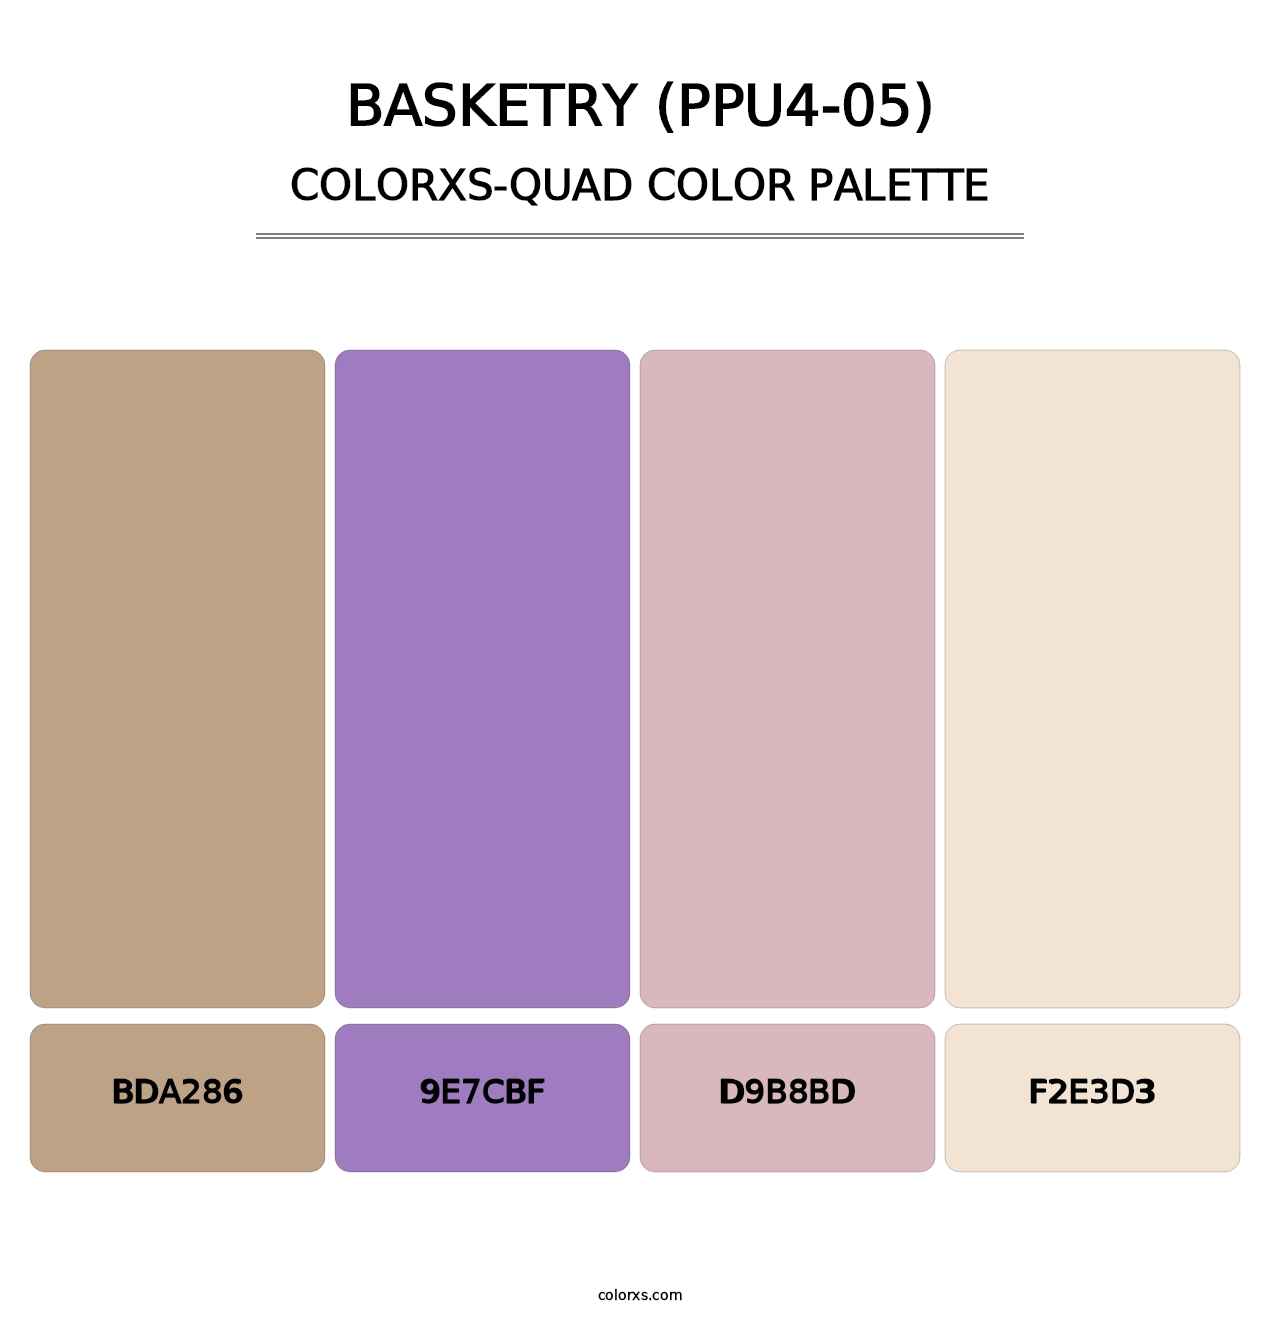 Basketry (PPU4-05) - Colorxs Quad Palette